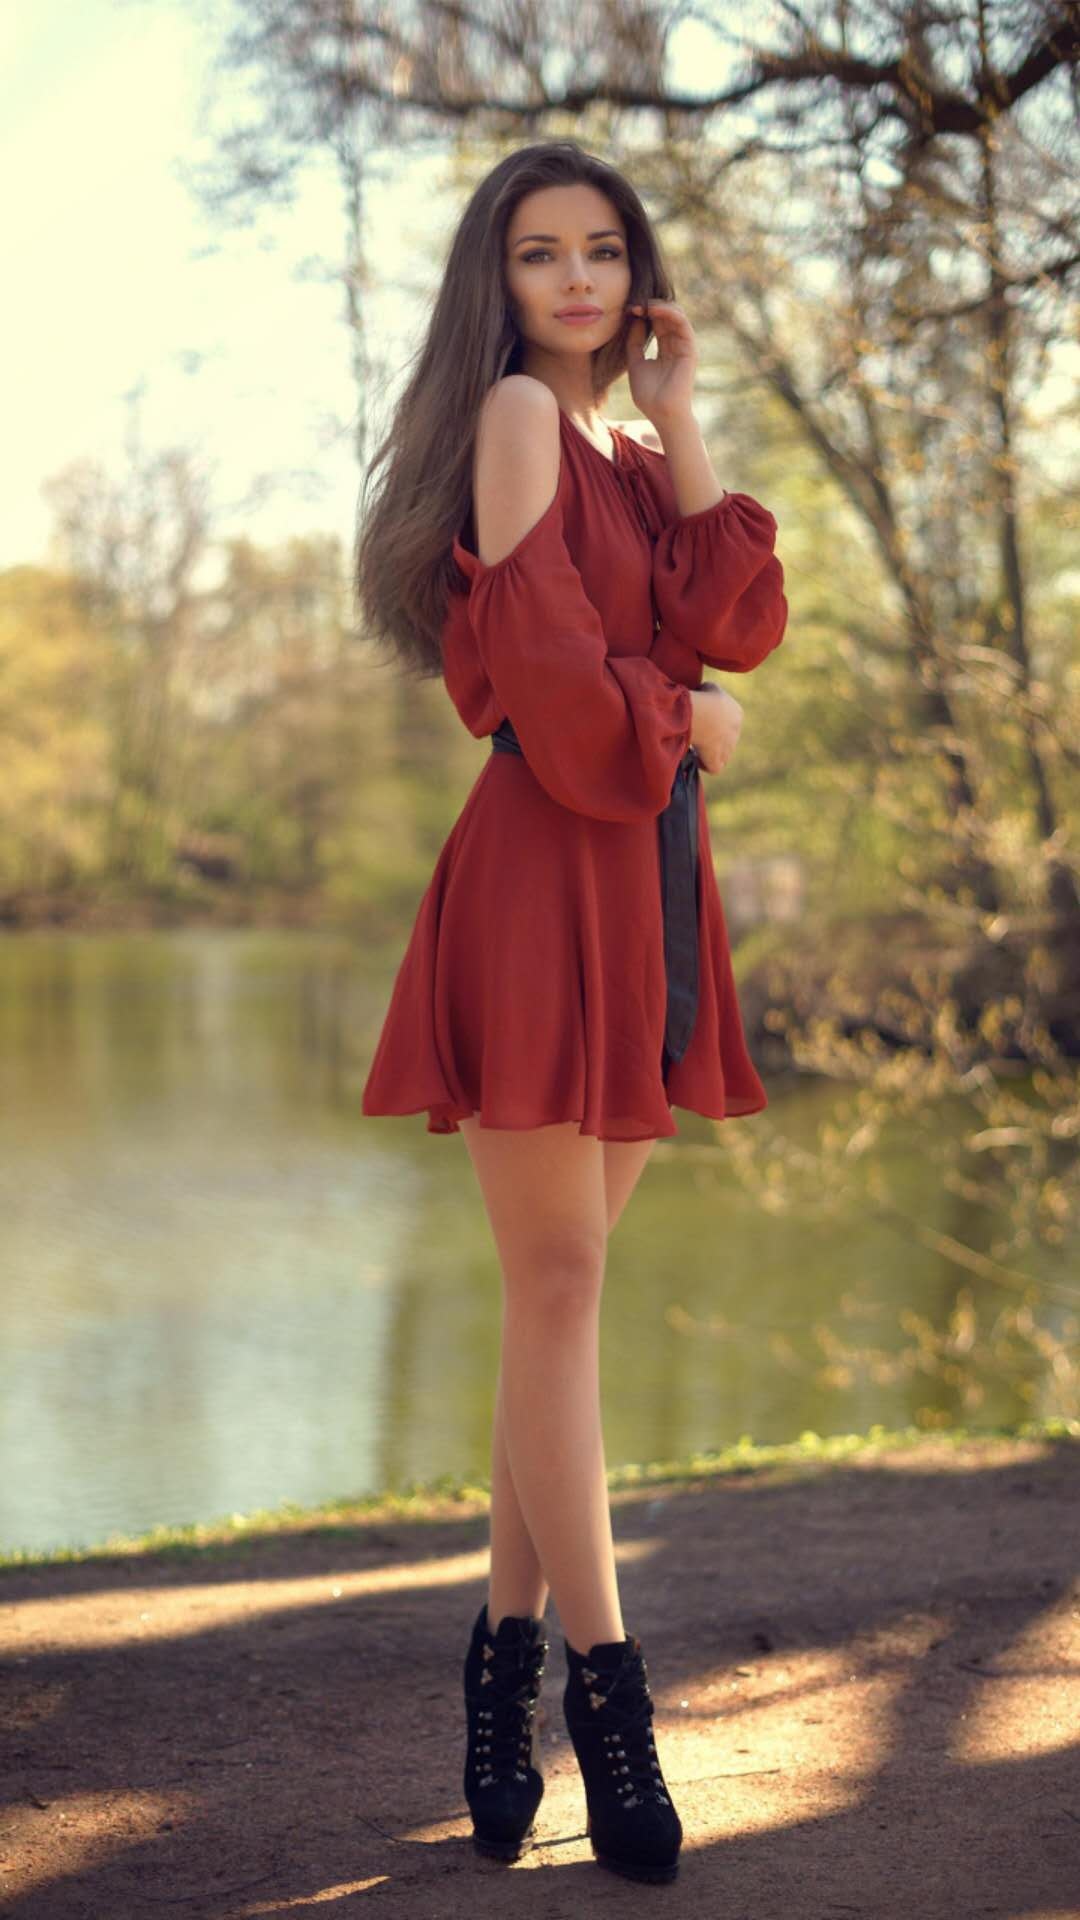 夏天,你需要一条红裙子